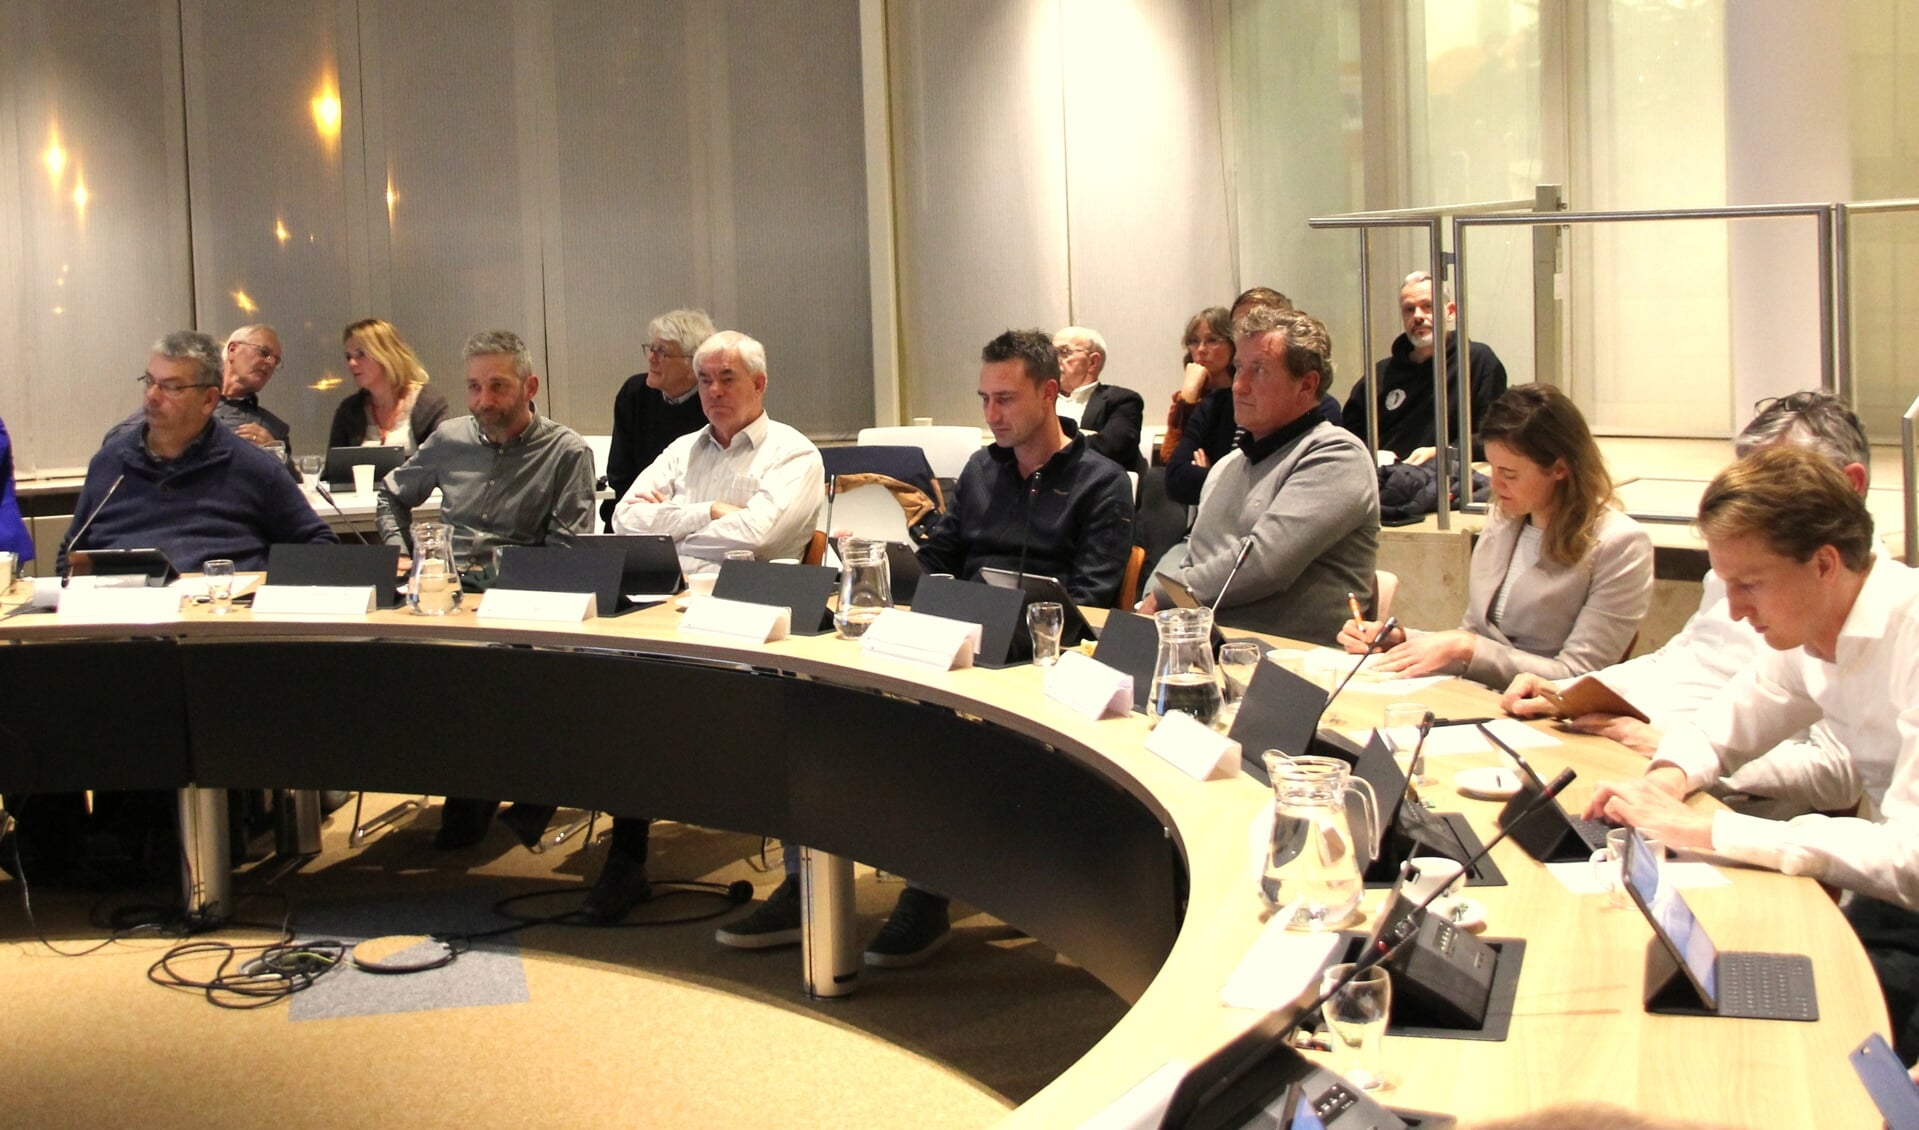 De politiek luistert aandachtig tijdens de presentatie van een presentatie over de Omgevingsvisie. | Foto: Wim Siemerink